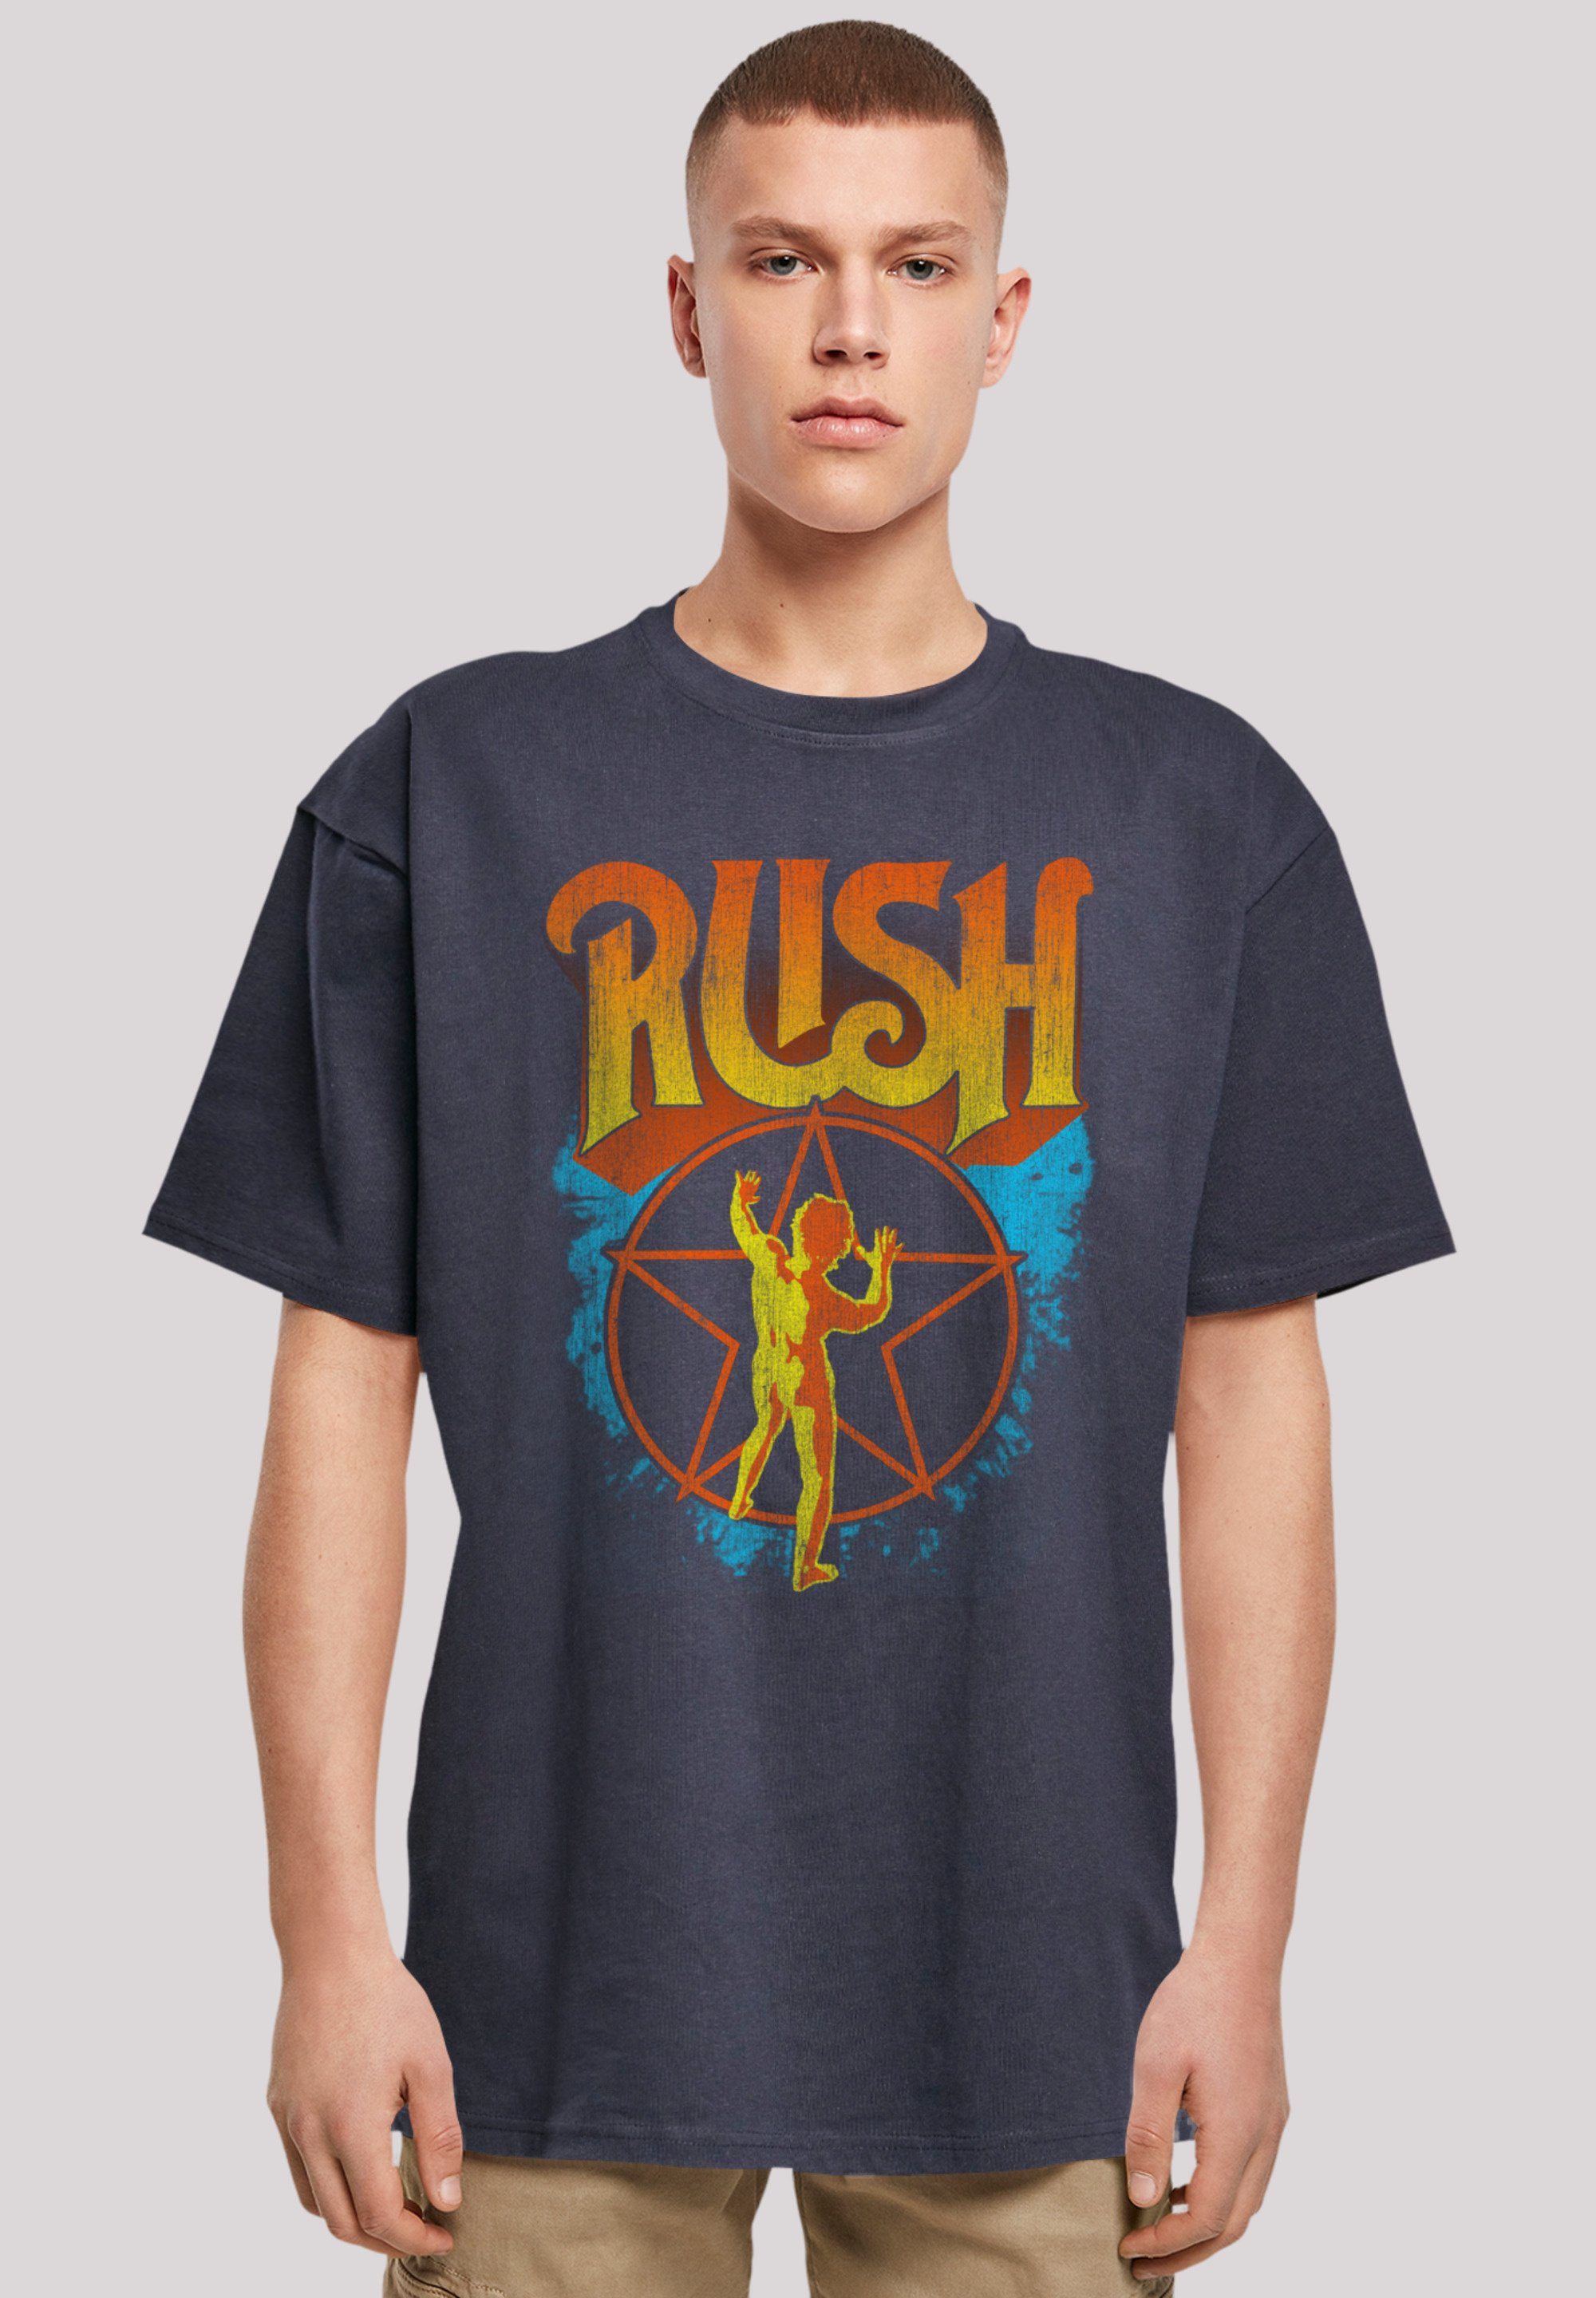 F4NT4STIC T-Shirt Premium Rush Qualität Rock Starman navy Band